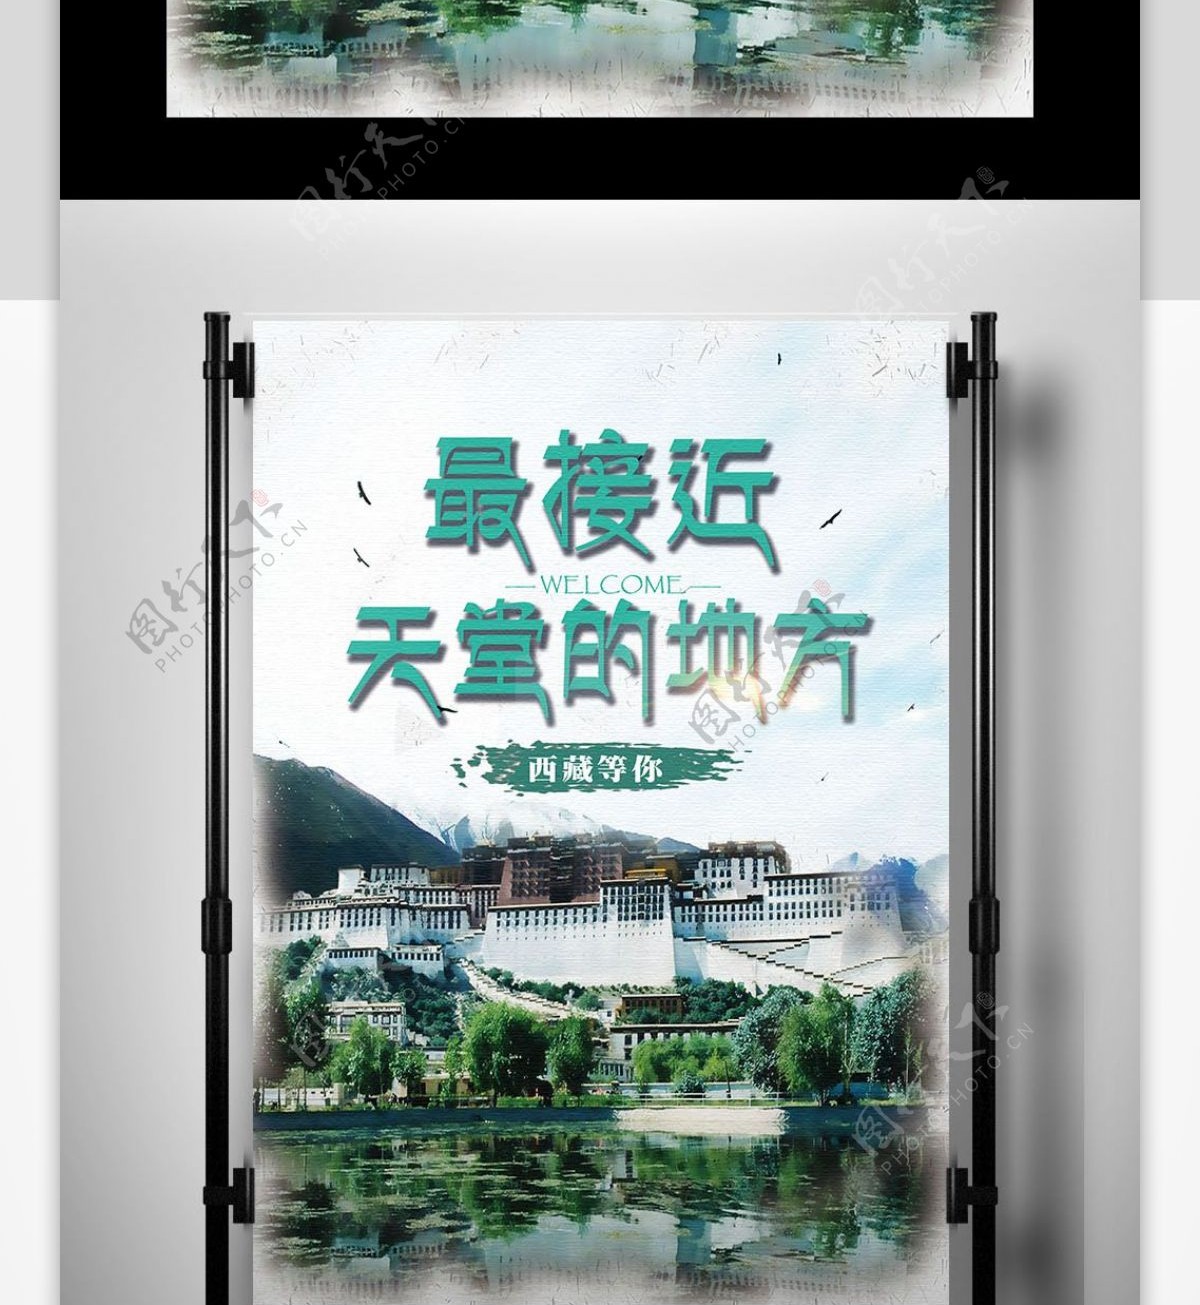 2017绿色清新的西藏旅游海报